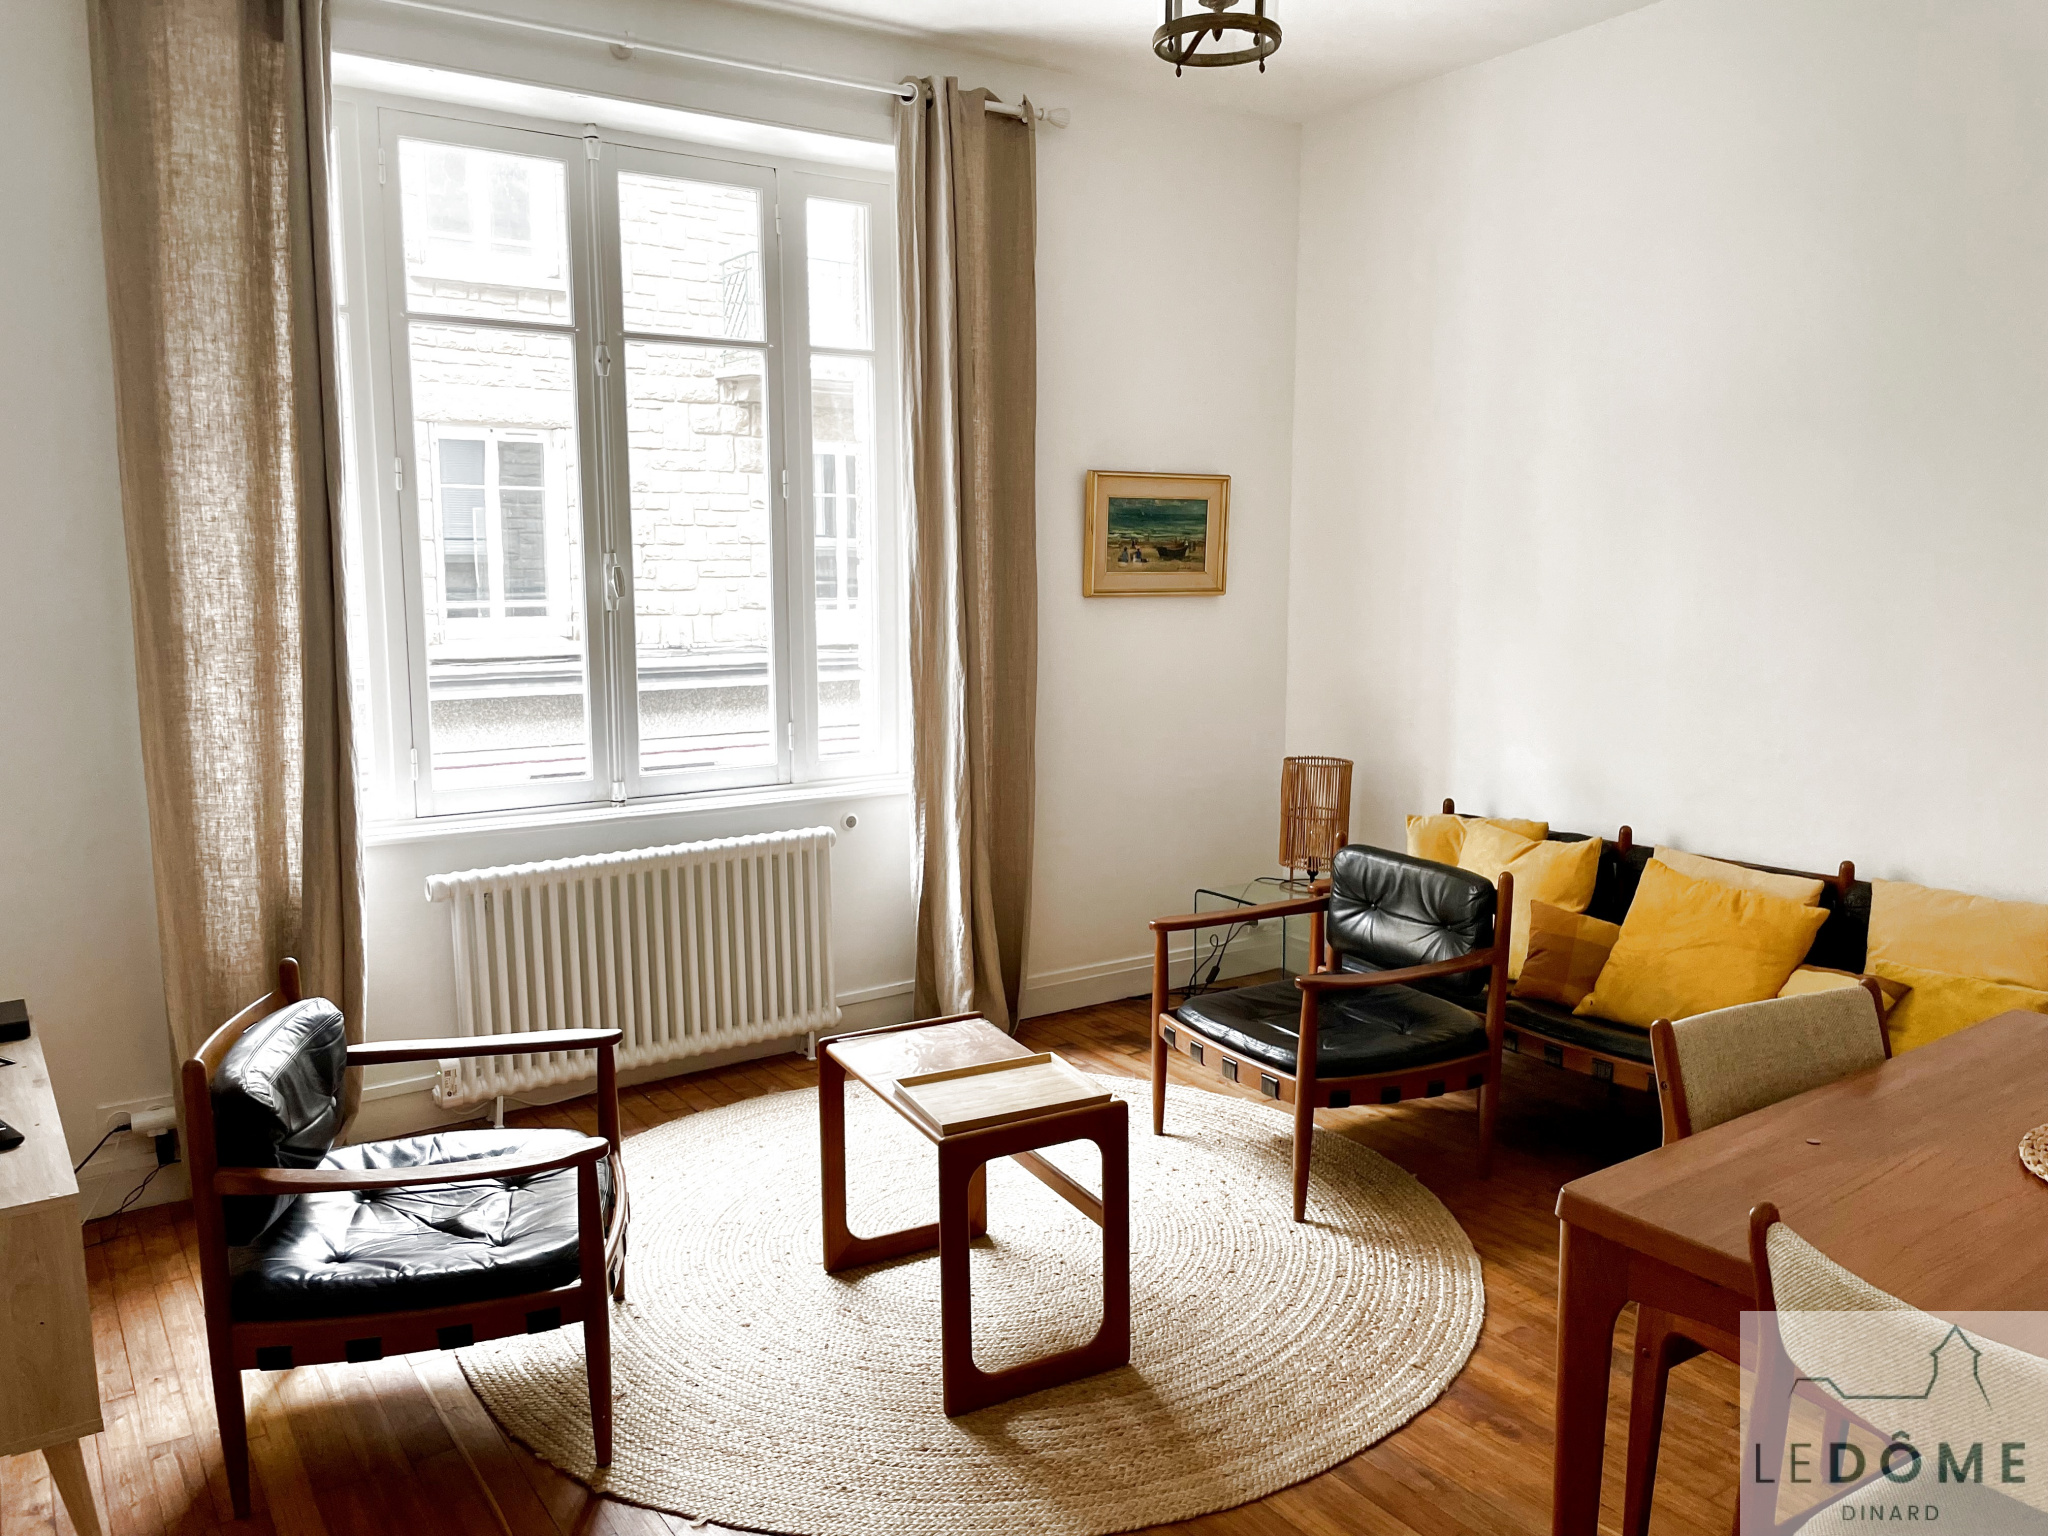 Vente Appartement 54m² 3 Pièces à Dinard (35800) - Le Dôme